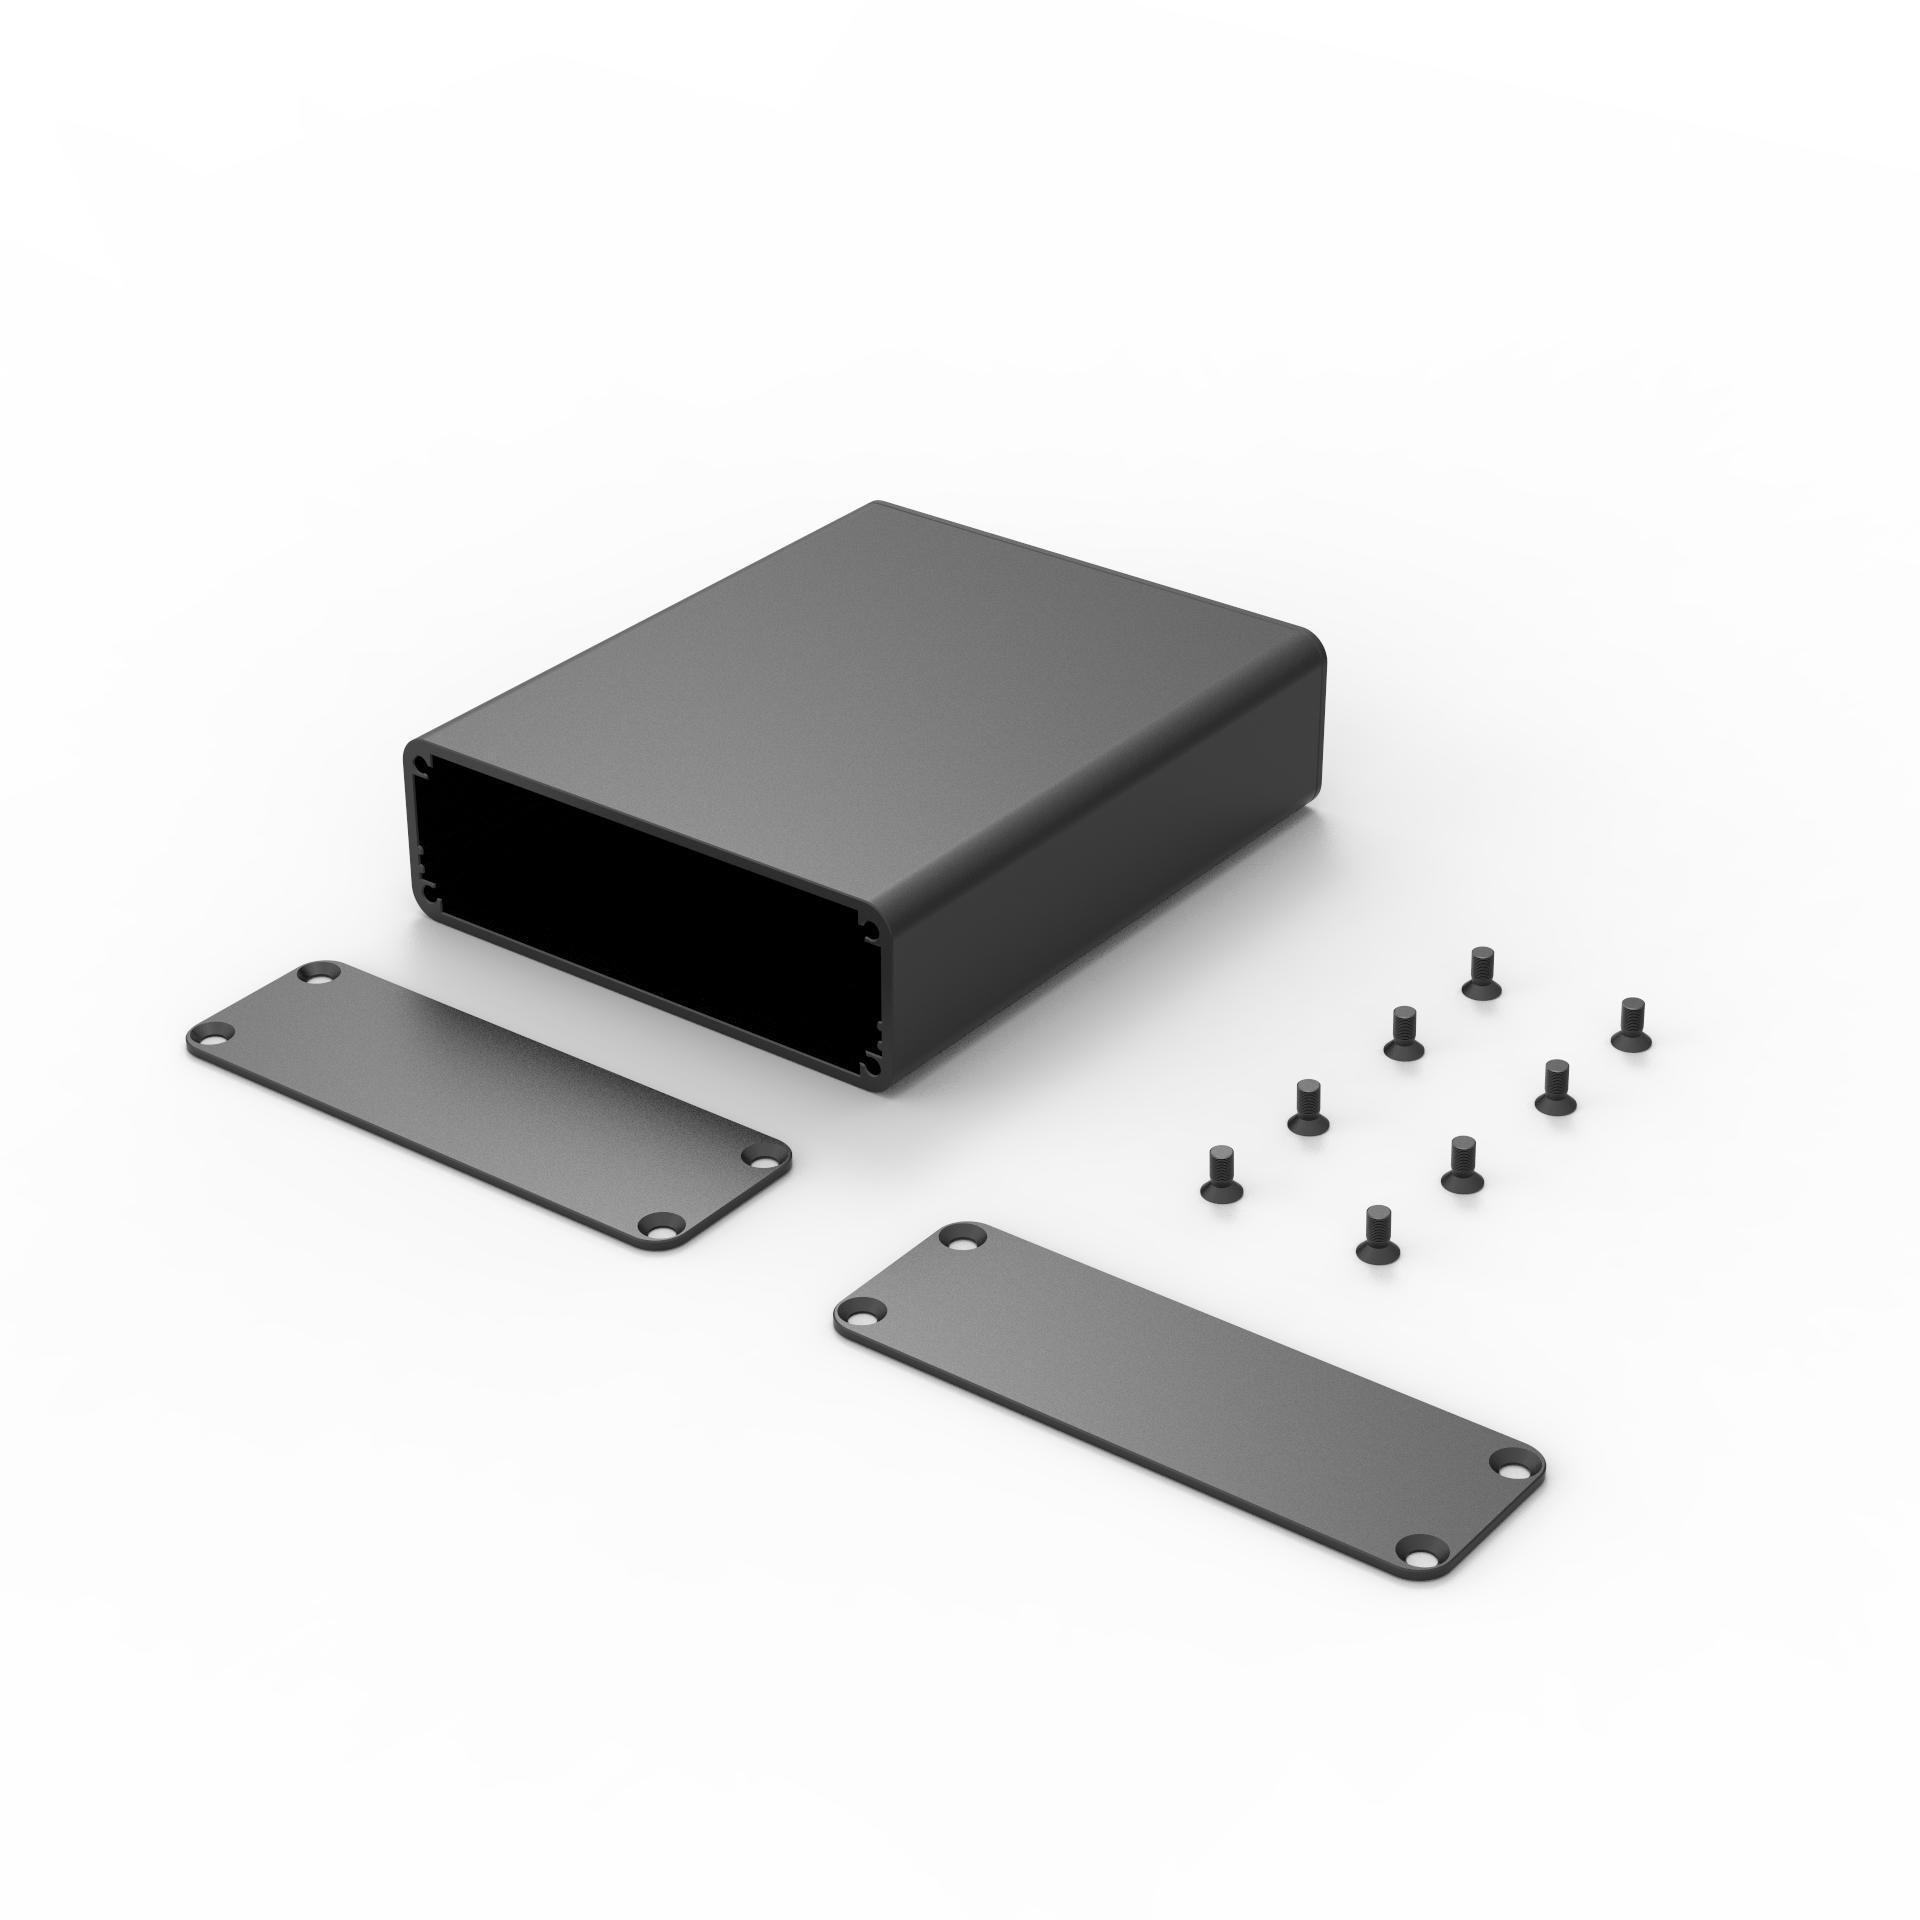 84*28*100 aluminum extrusion design guide pcb enclosure box electronics case